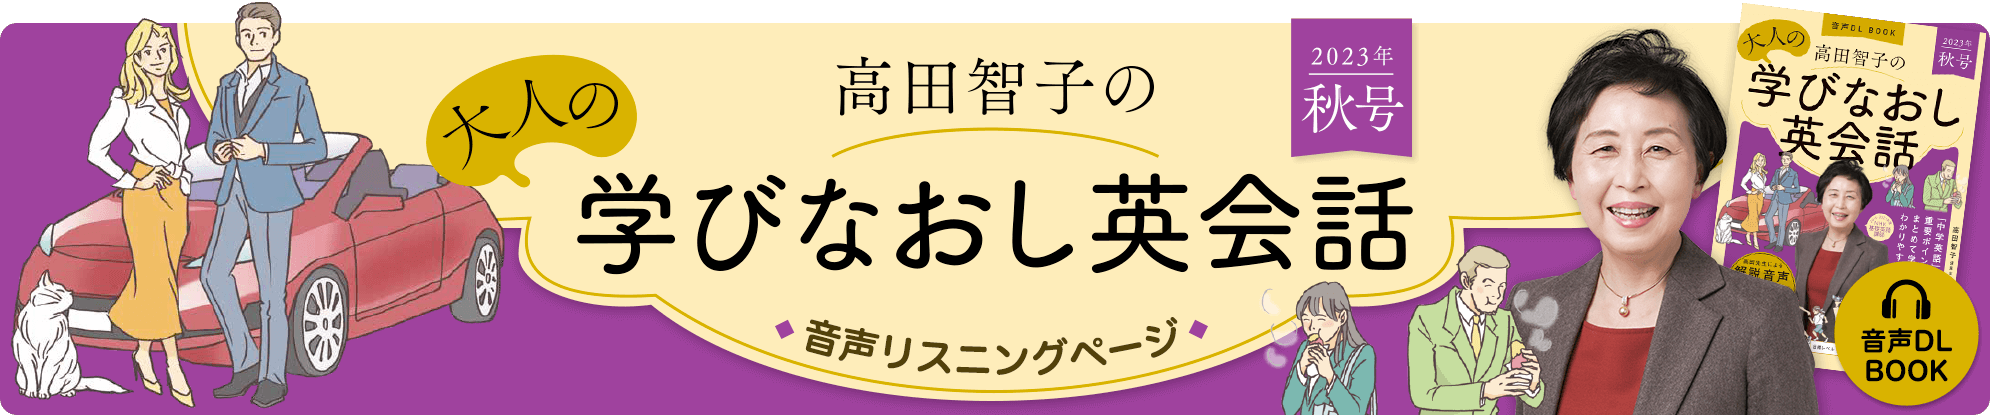 音声DL BOOK 高田智子の大人の学びなおし英会話 音声リスニングページ